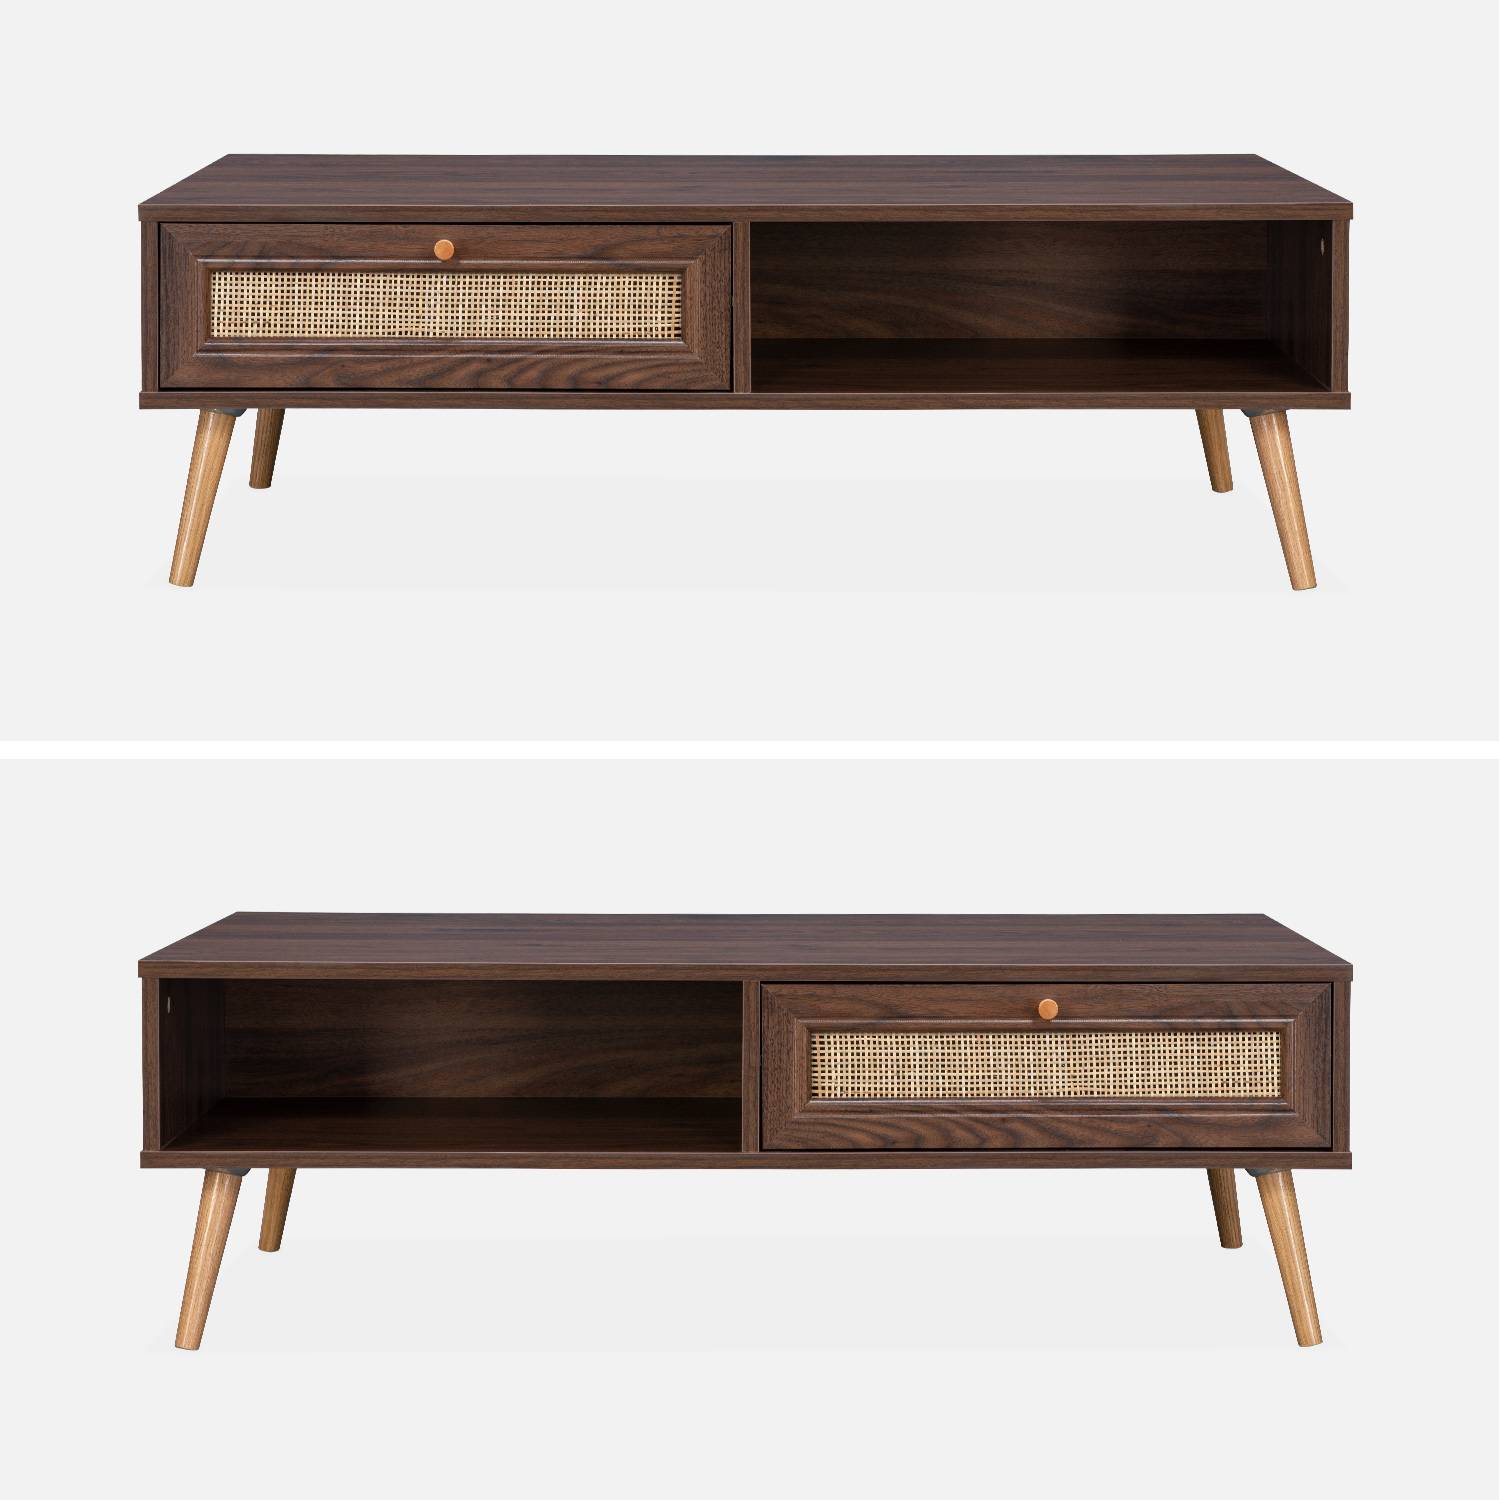 Table basse en cannage 110x59x39cm - Bohème - couleur bois foncé, 1 tiroir, 1 espace de rangement, pieds scandinaves Photo2